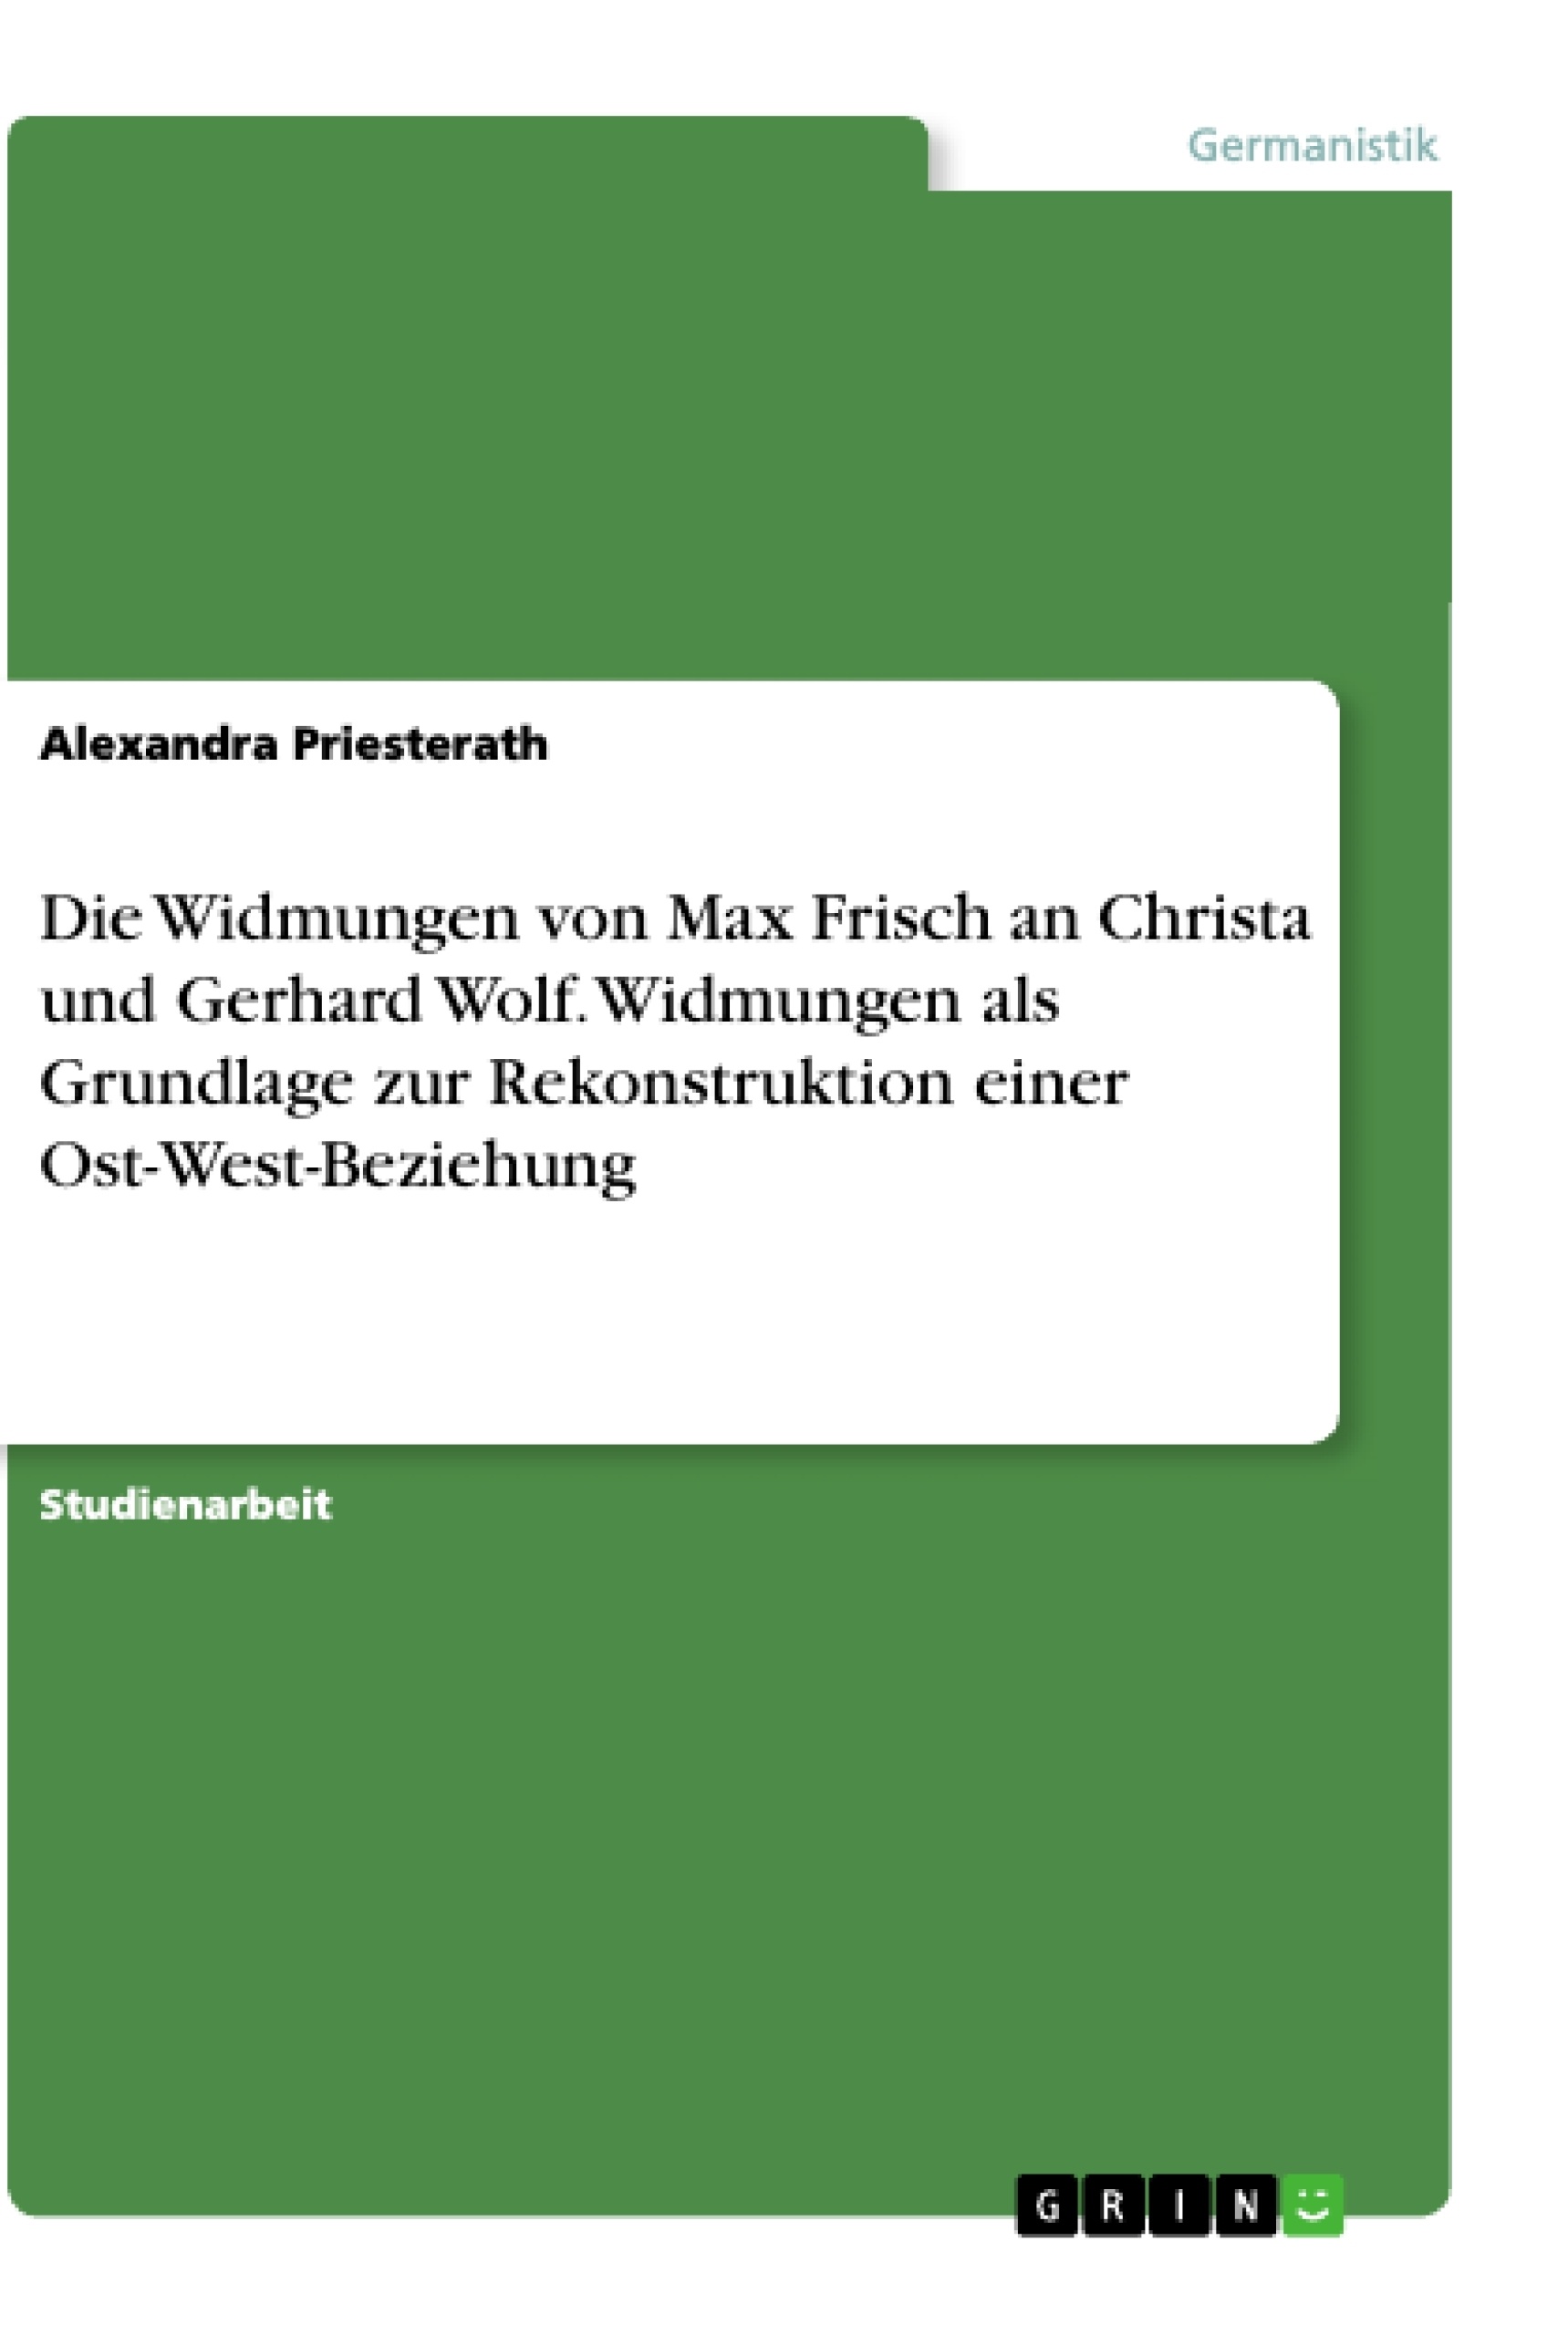 Title: Die Widmungen von Max Frisch an Christa und Gerhard Wolf. Widmungen als Grundlage zur Rekonstruktion einer Ost-West-Beziehung